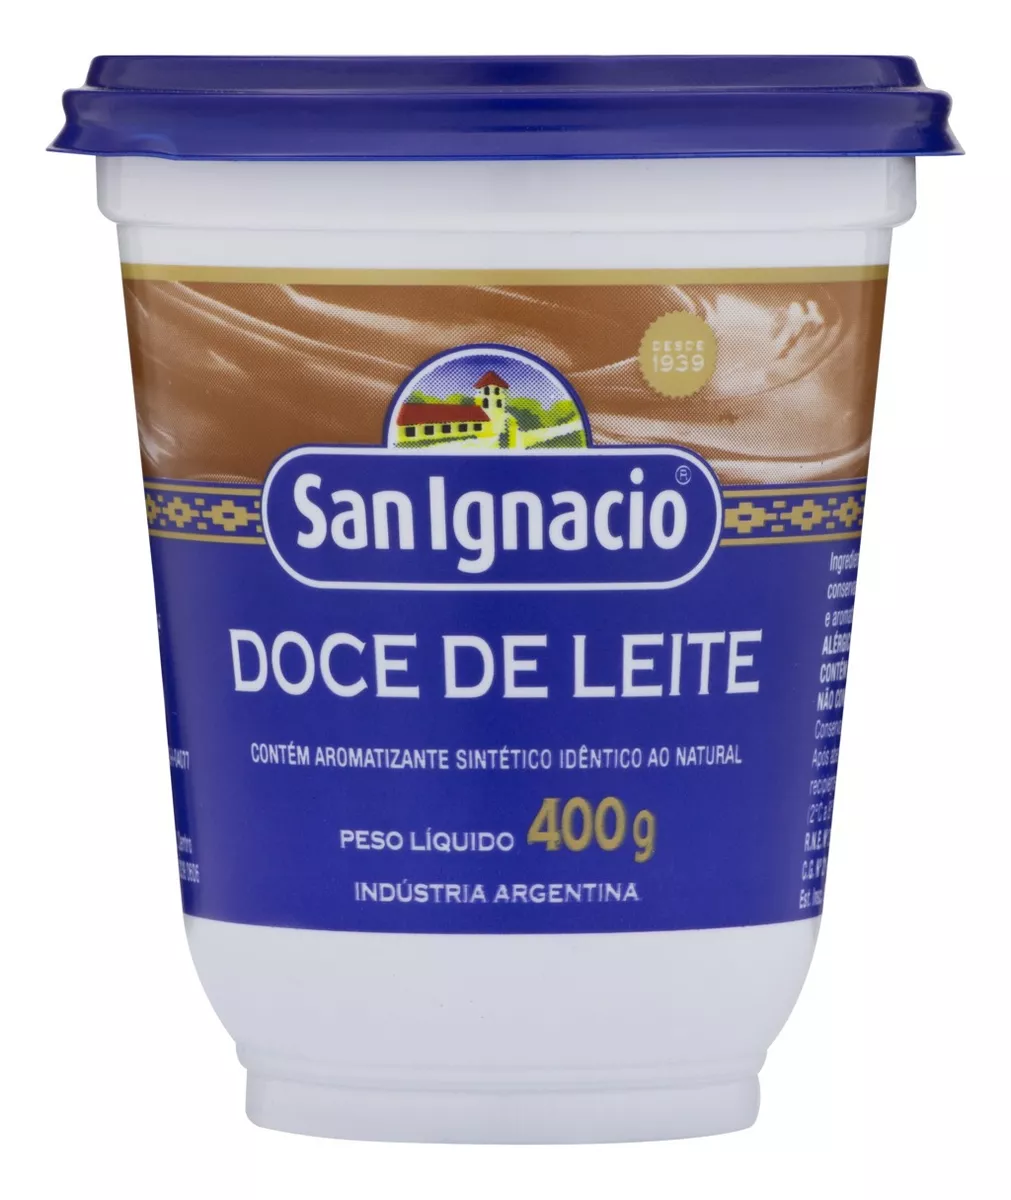 Primeira imagem para pesquisa de doce de leite argentino